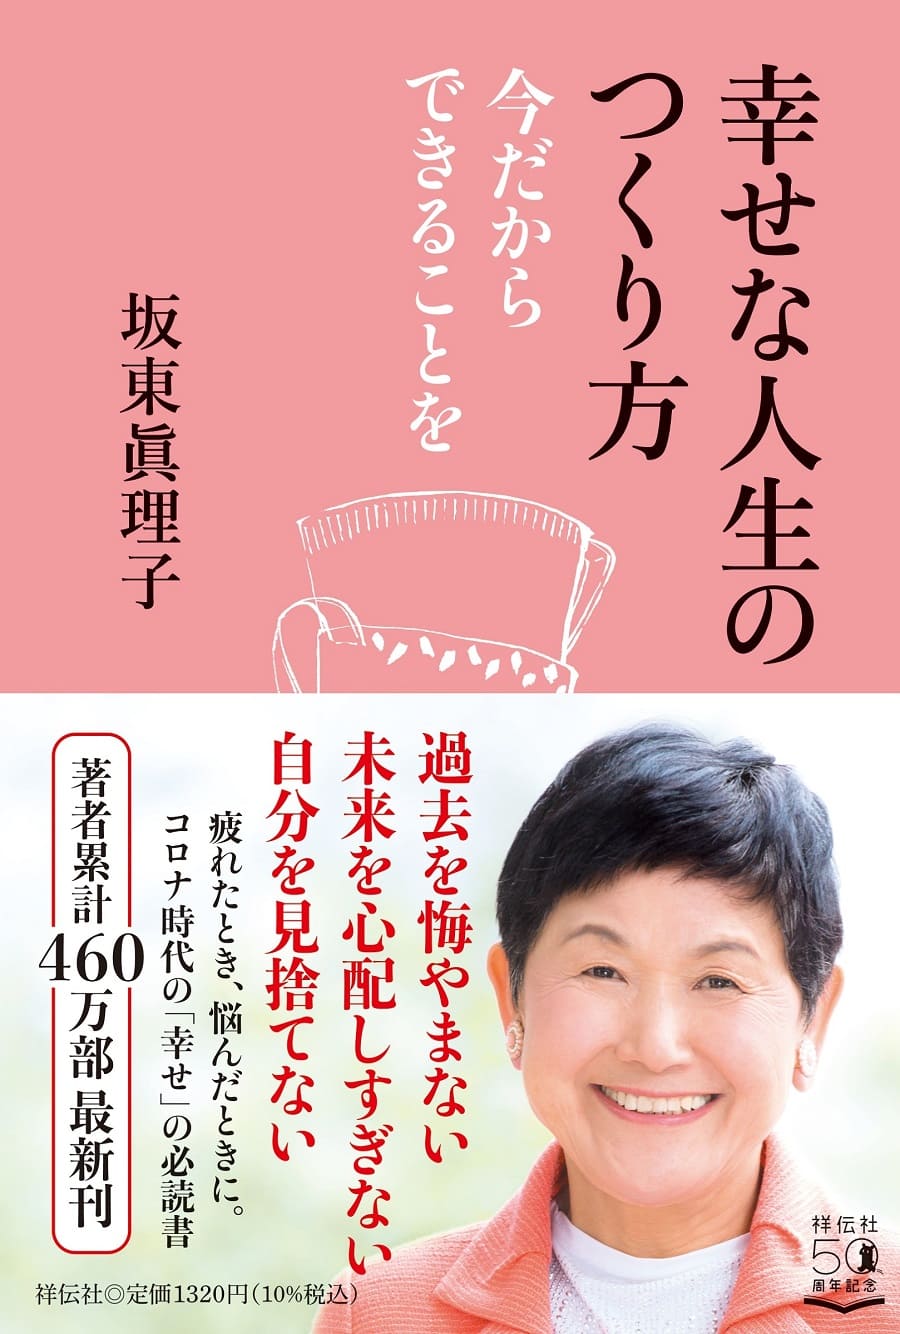 坂東真理子さん55冊目の著書は 幸せ人生 の実践編 ニコニコニュース